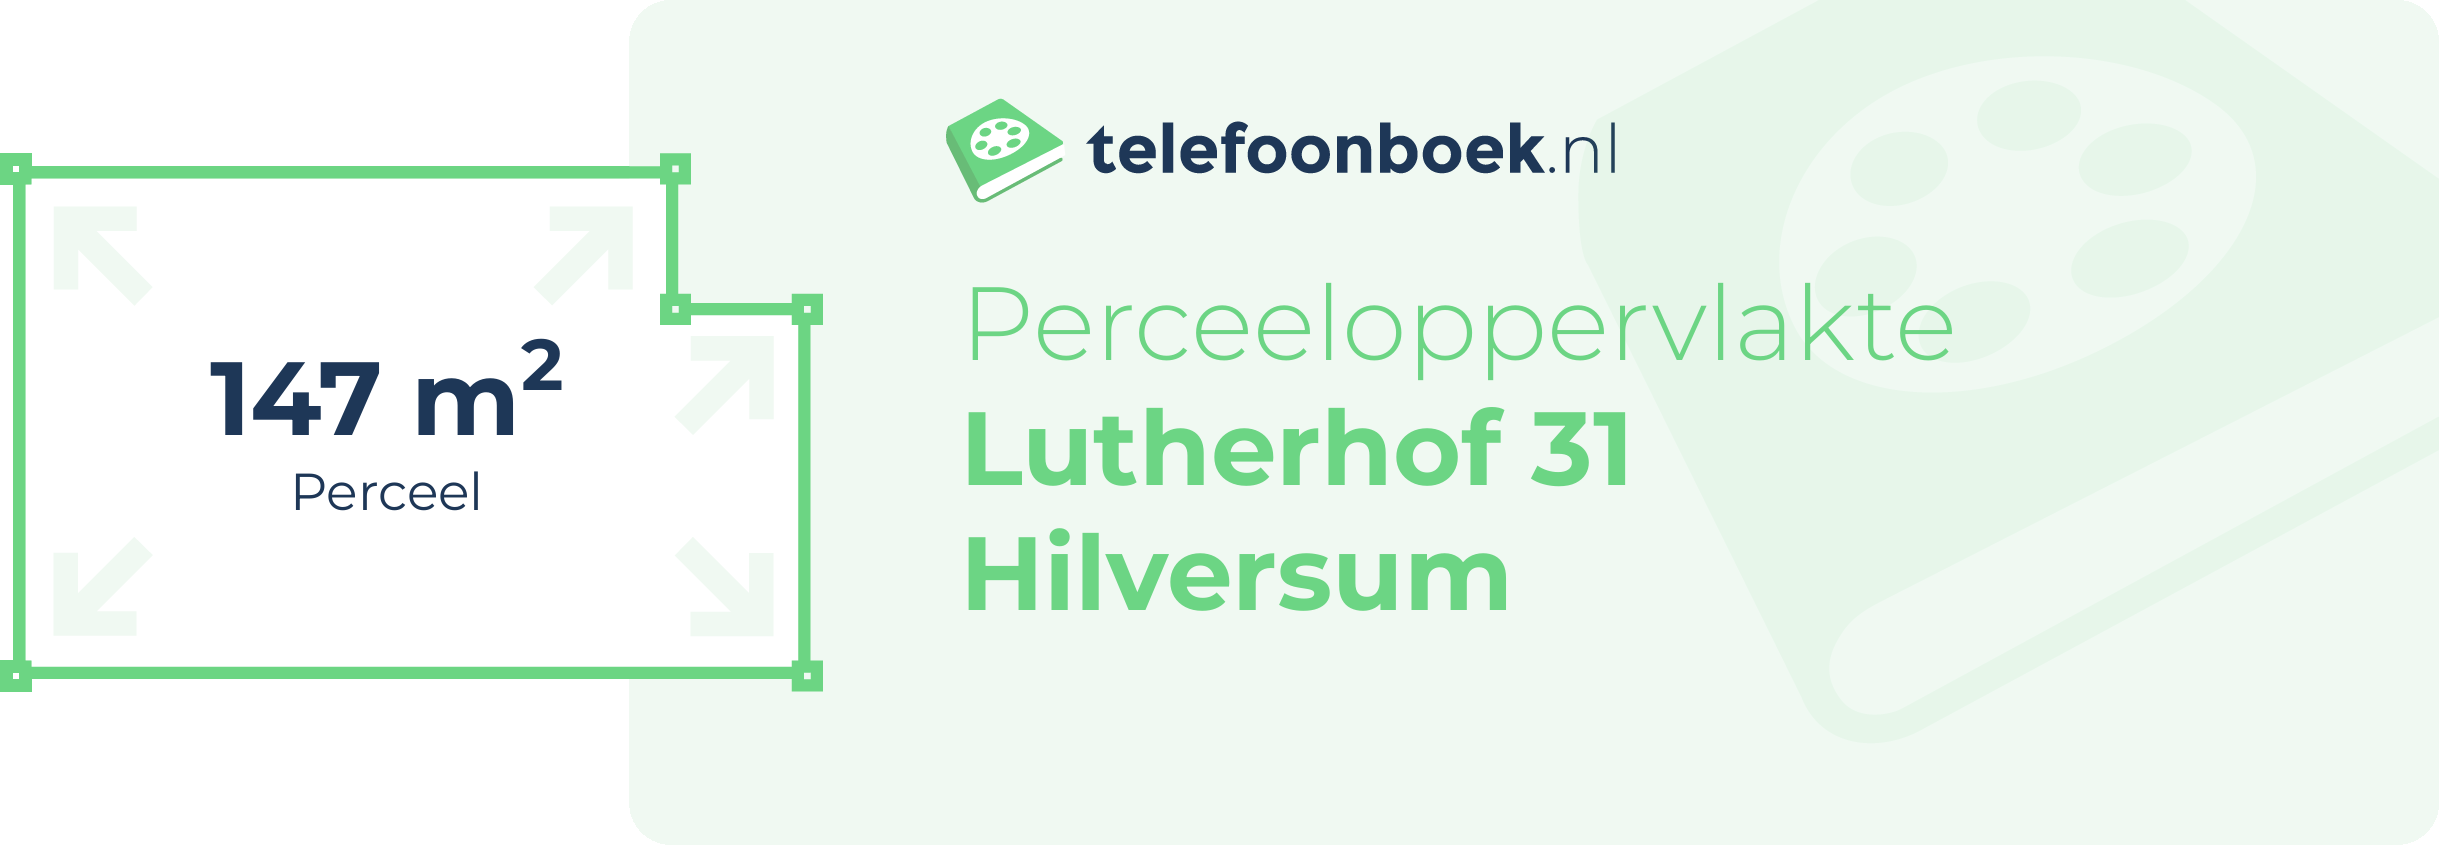 Perceeloppervlakte Lutherhof 31 Hilversum